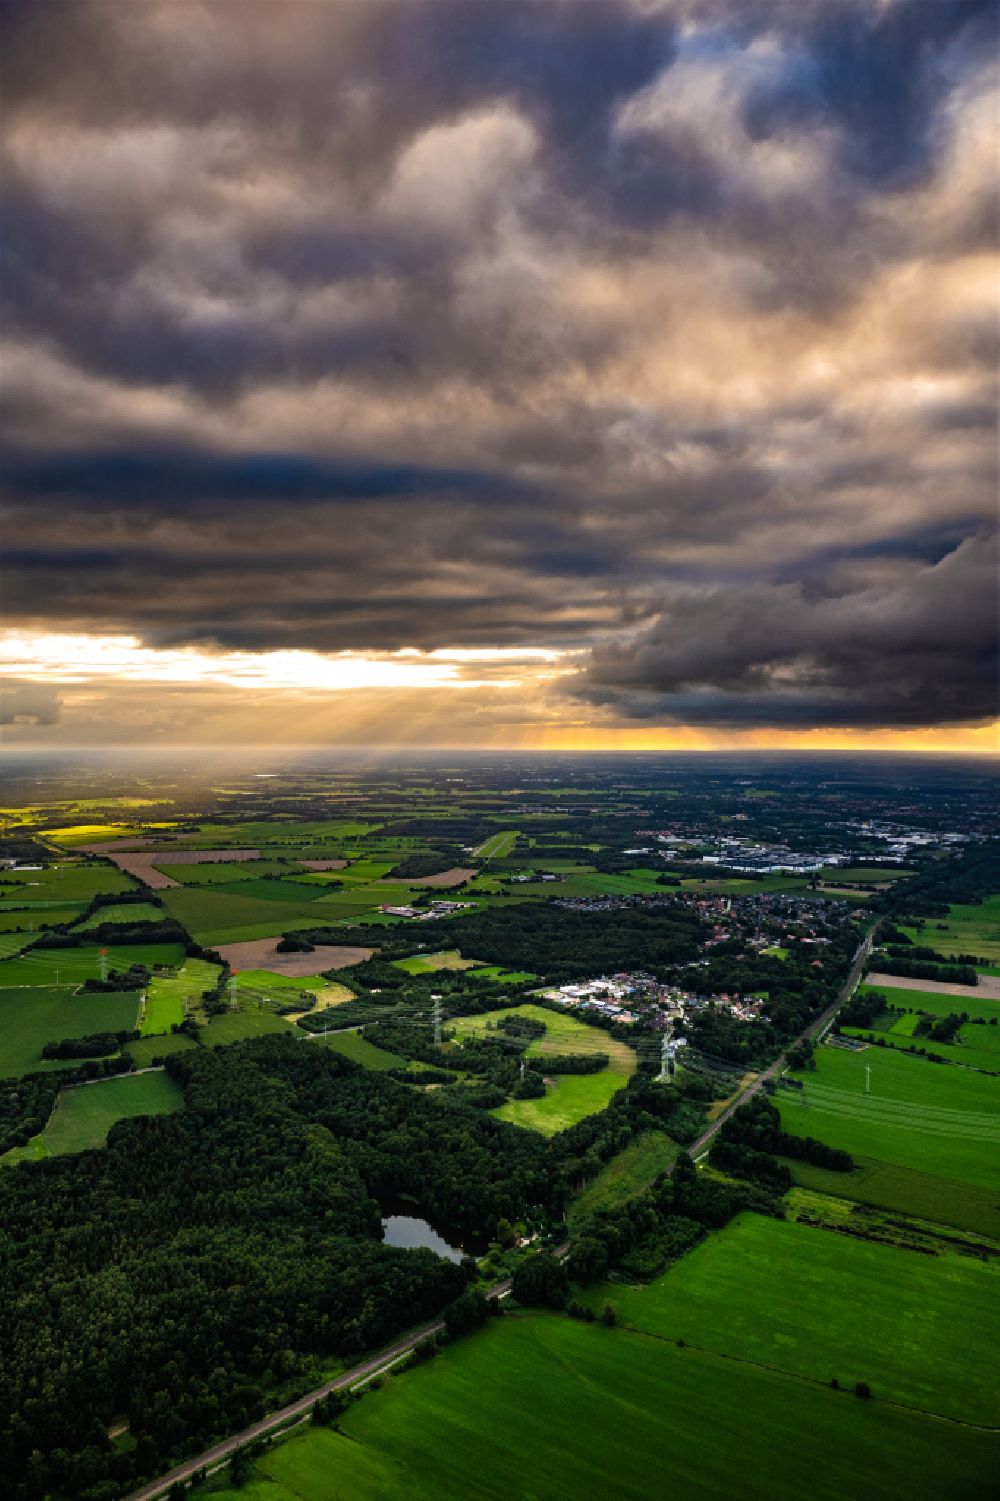 Luftaufnahme Stade - Flugplatz Stade im Sonnenuntergang im Bundesland Niedersachsen, Deutschland